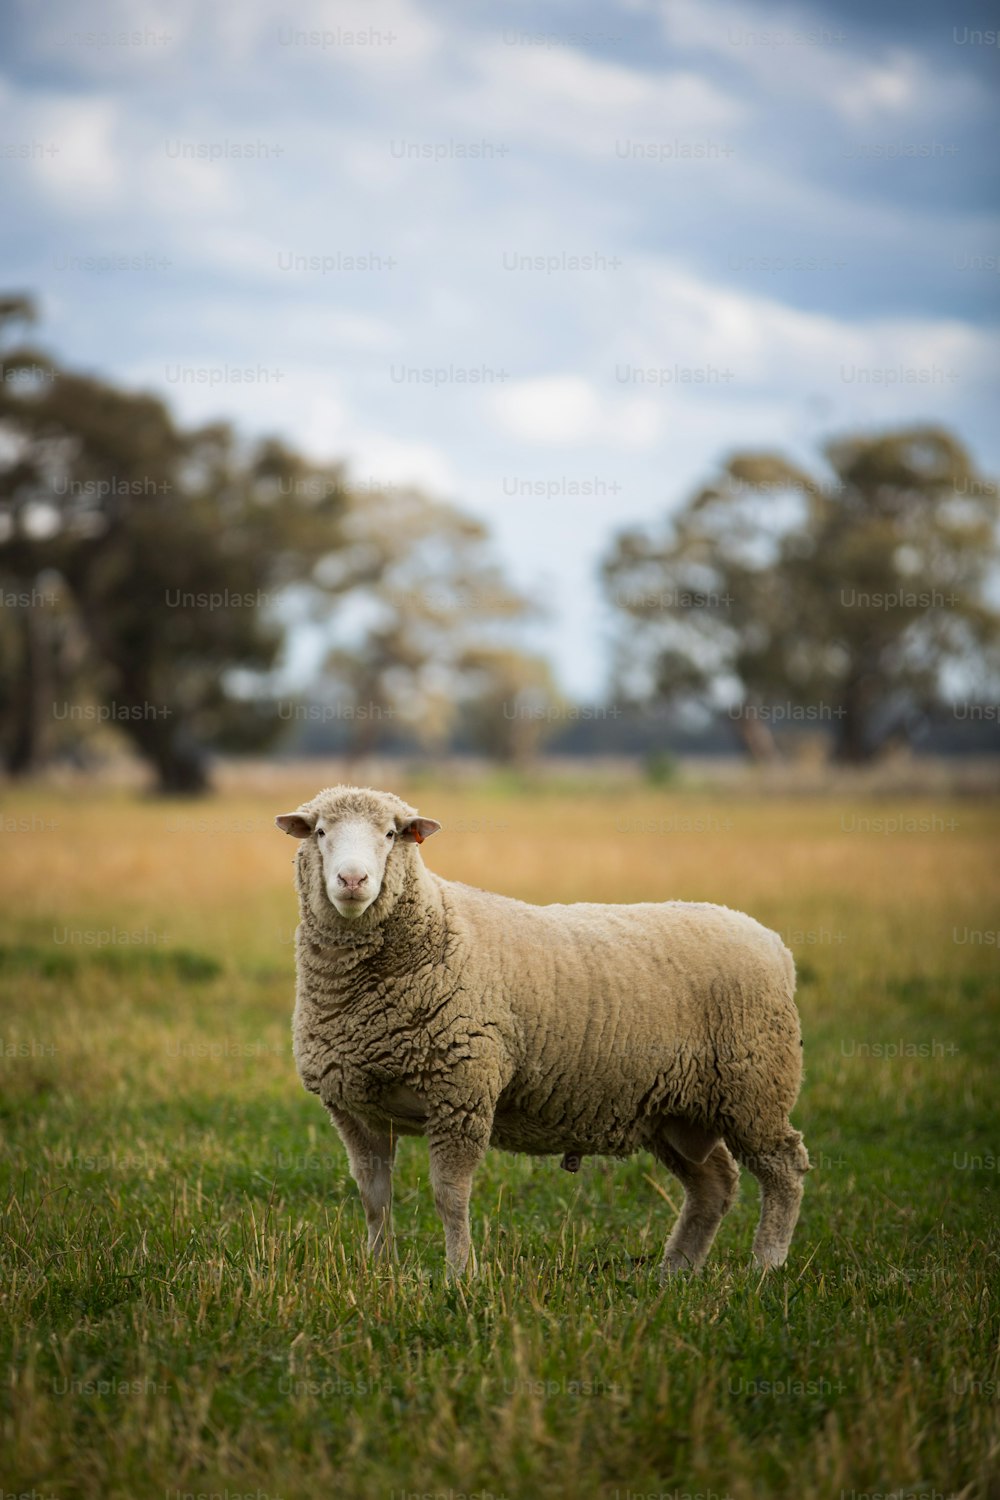 Una oveja de pie en un campo cubierto de hierba con árboles en el fondo